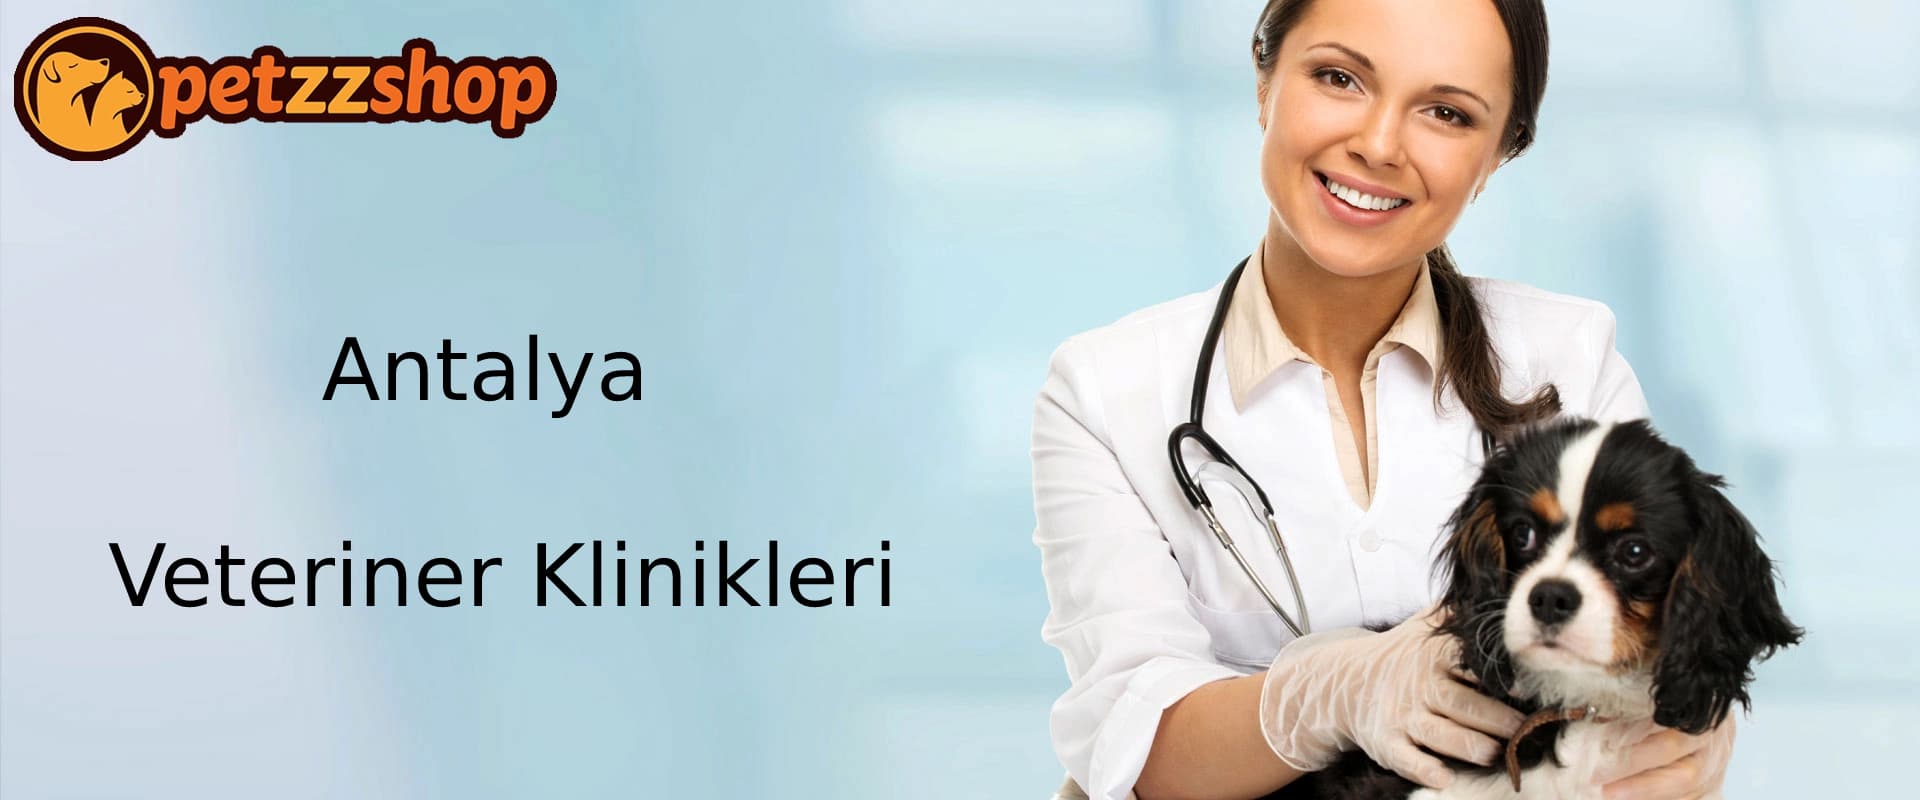 Antalya Veteriner Klinikleri